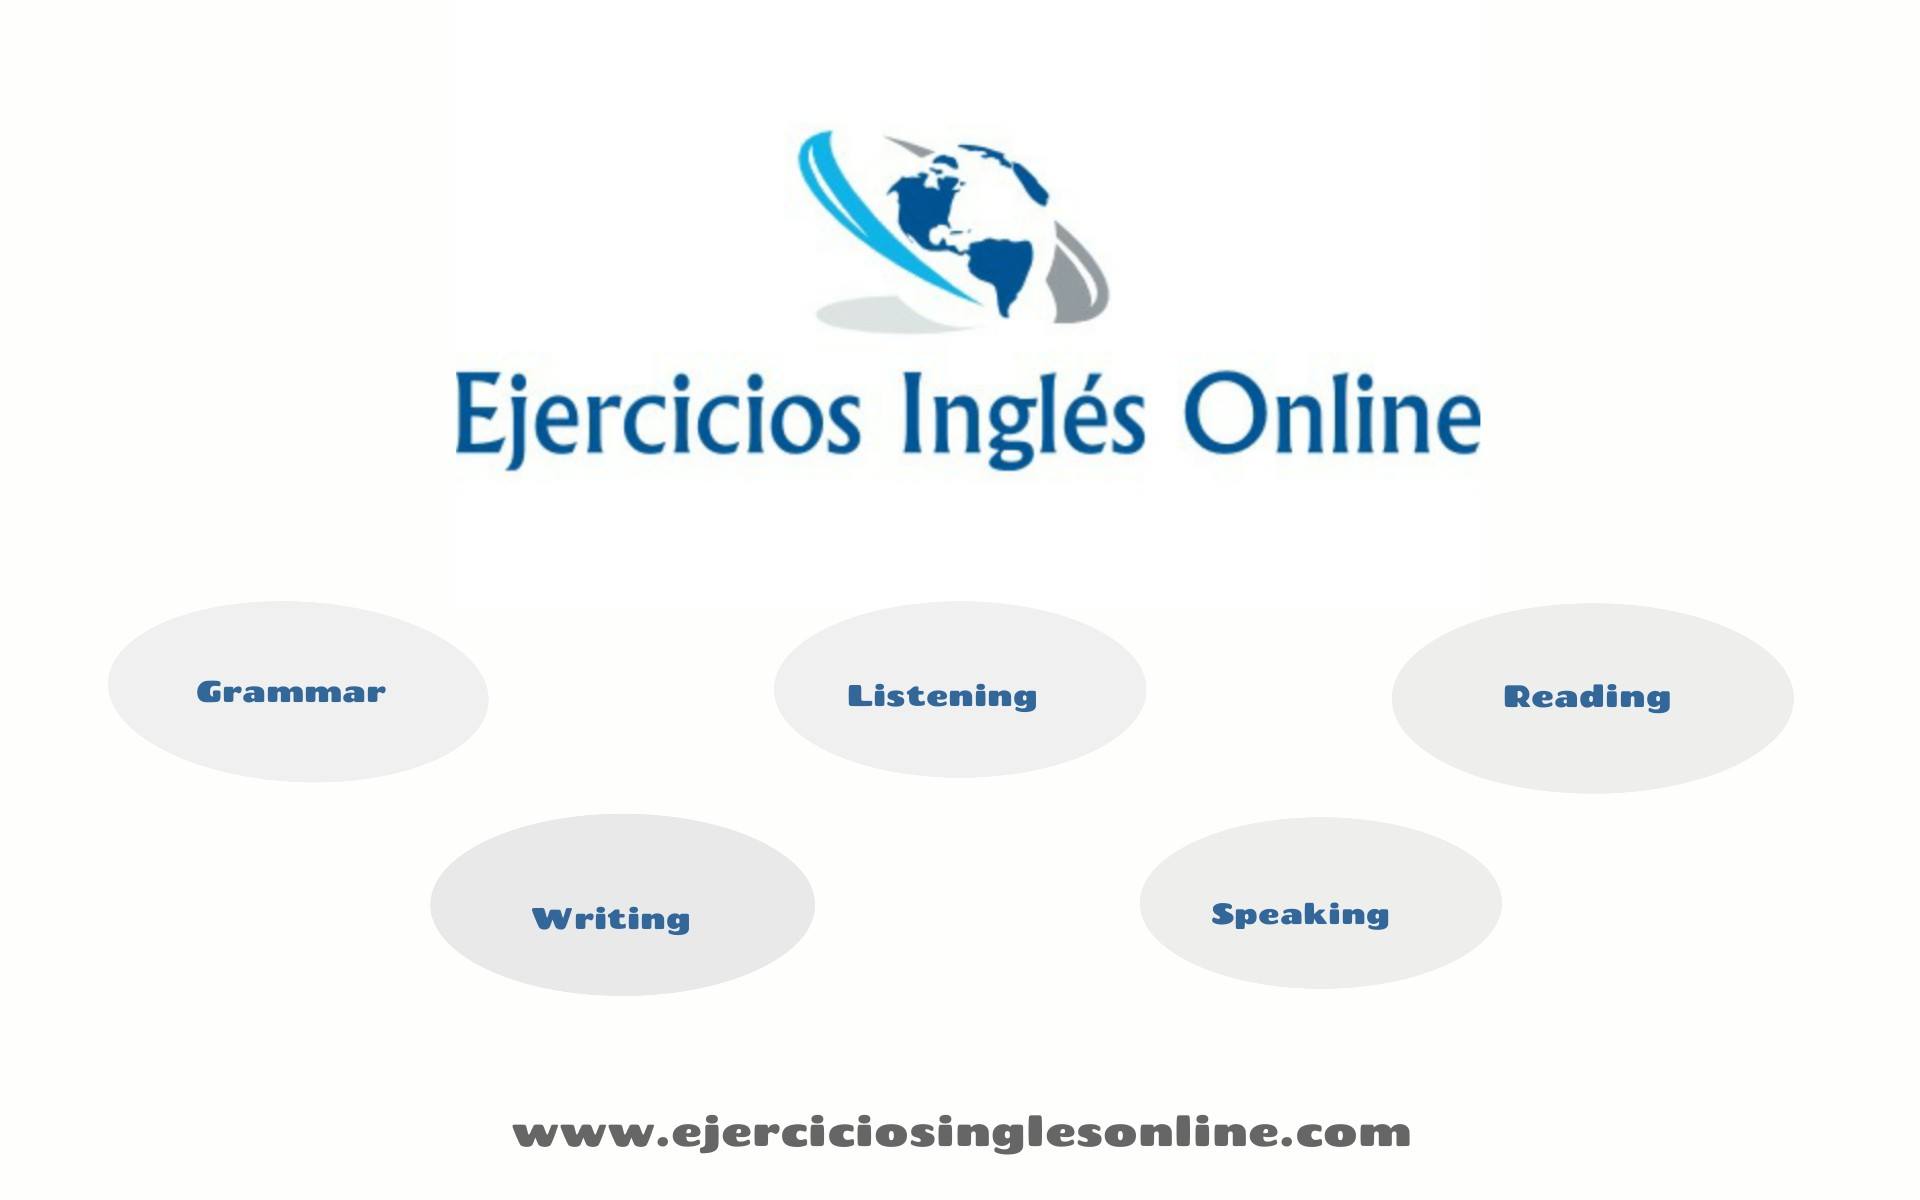 ¿Cómo puedo utilizar “ejerciciosinglesonline.com” para practicar la conjugación de verbos irregulares en inglés?